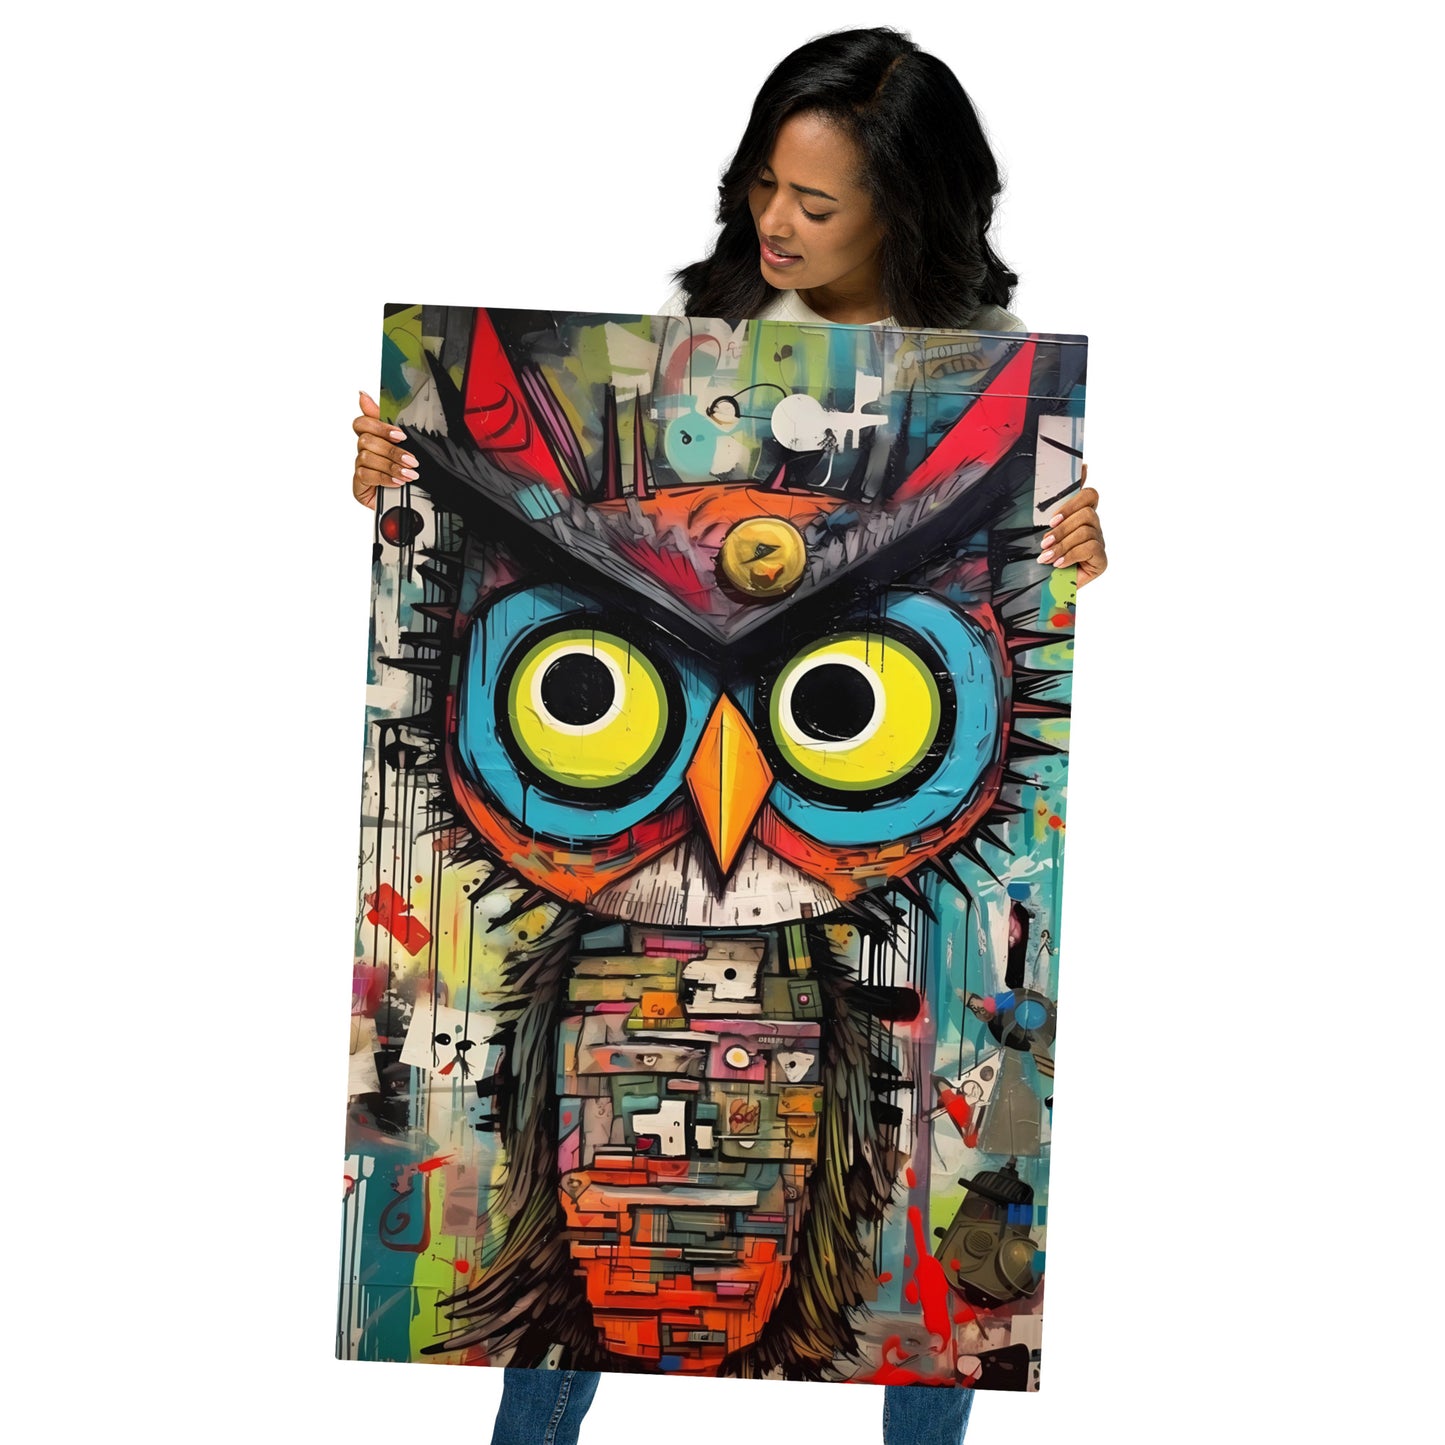 Colorful Owl Metal Poster: Owl-tastic Artwork